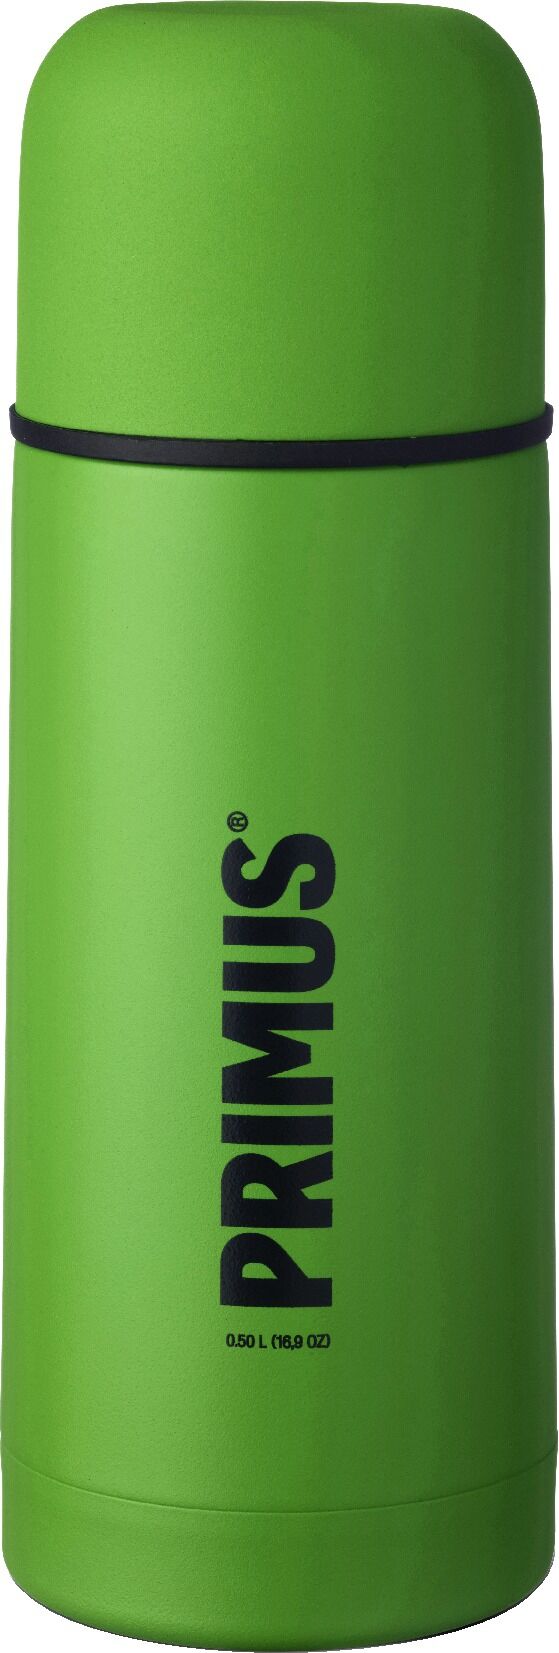 Primus Vacuum Bottle 0.5L termos Green 2018